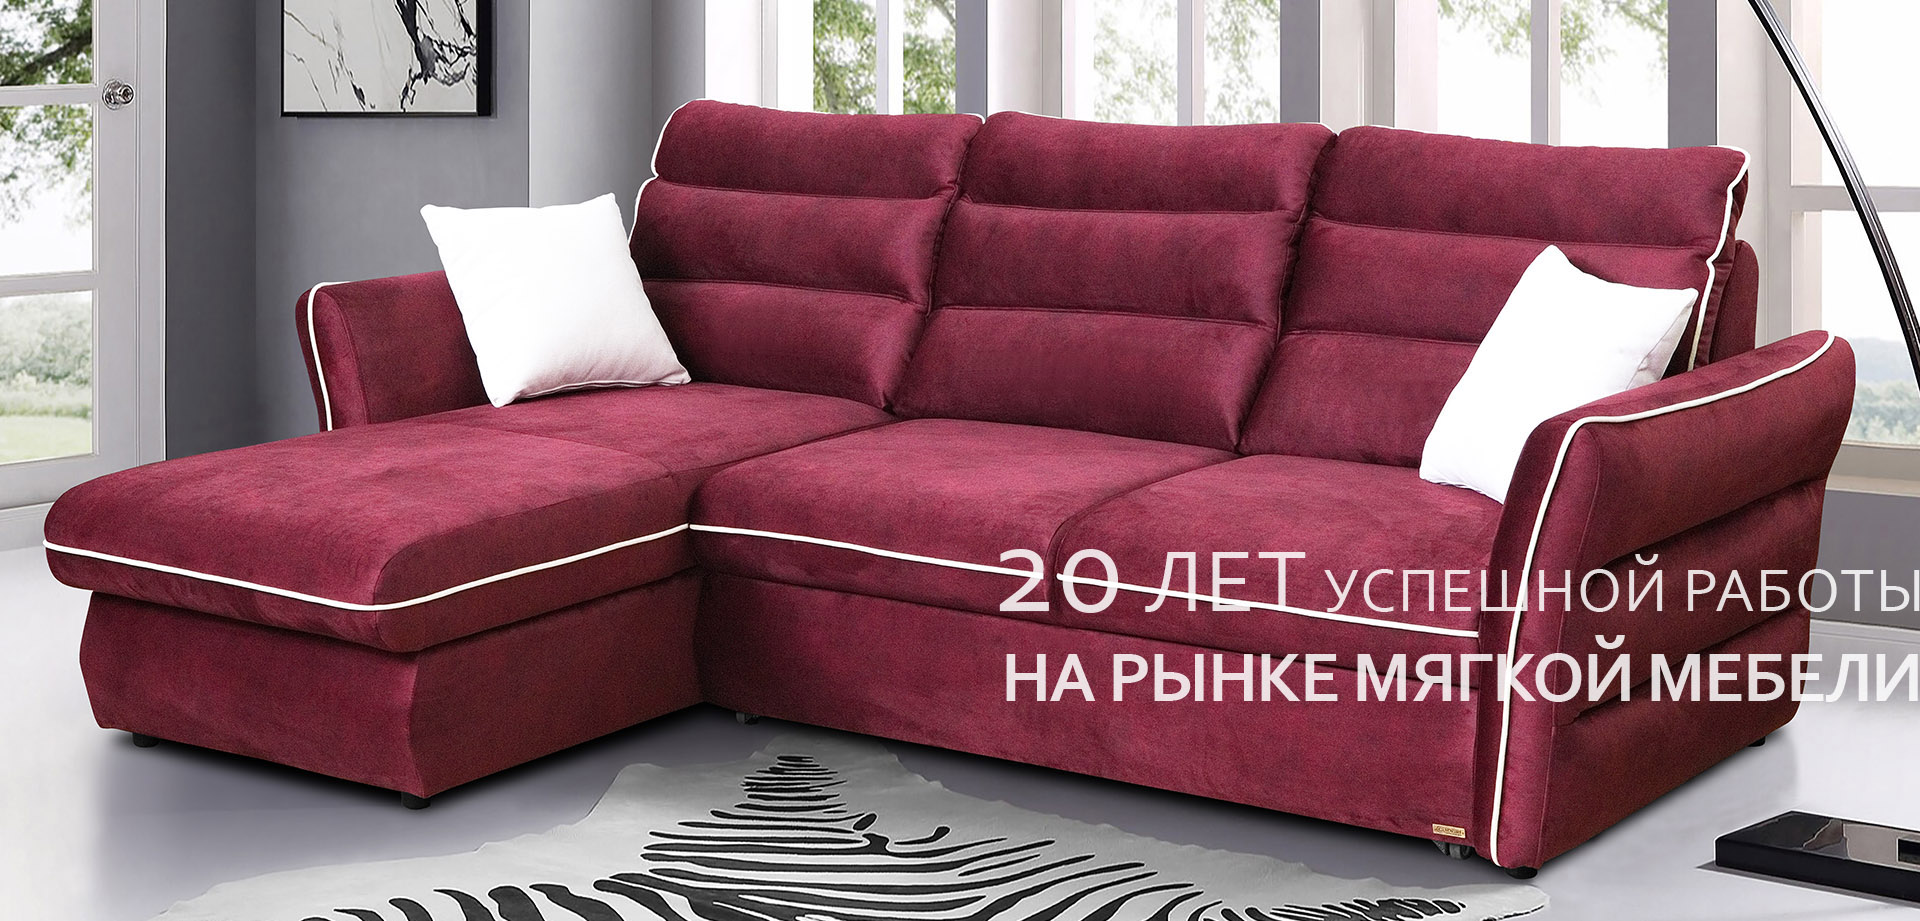 Польские производители мягкой мебели